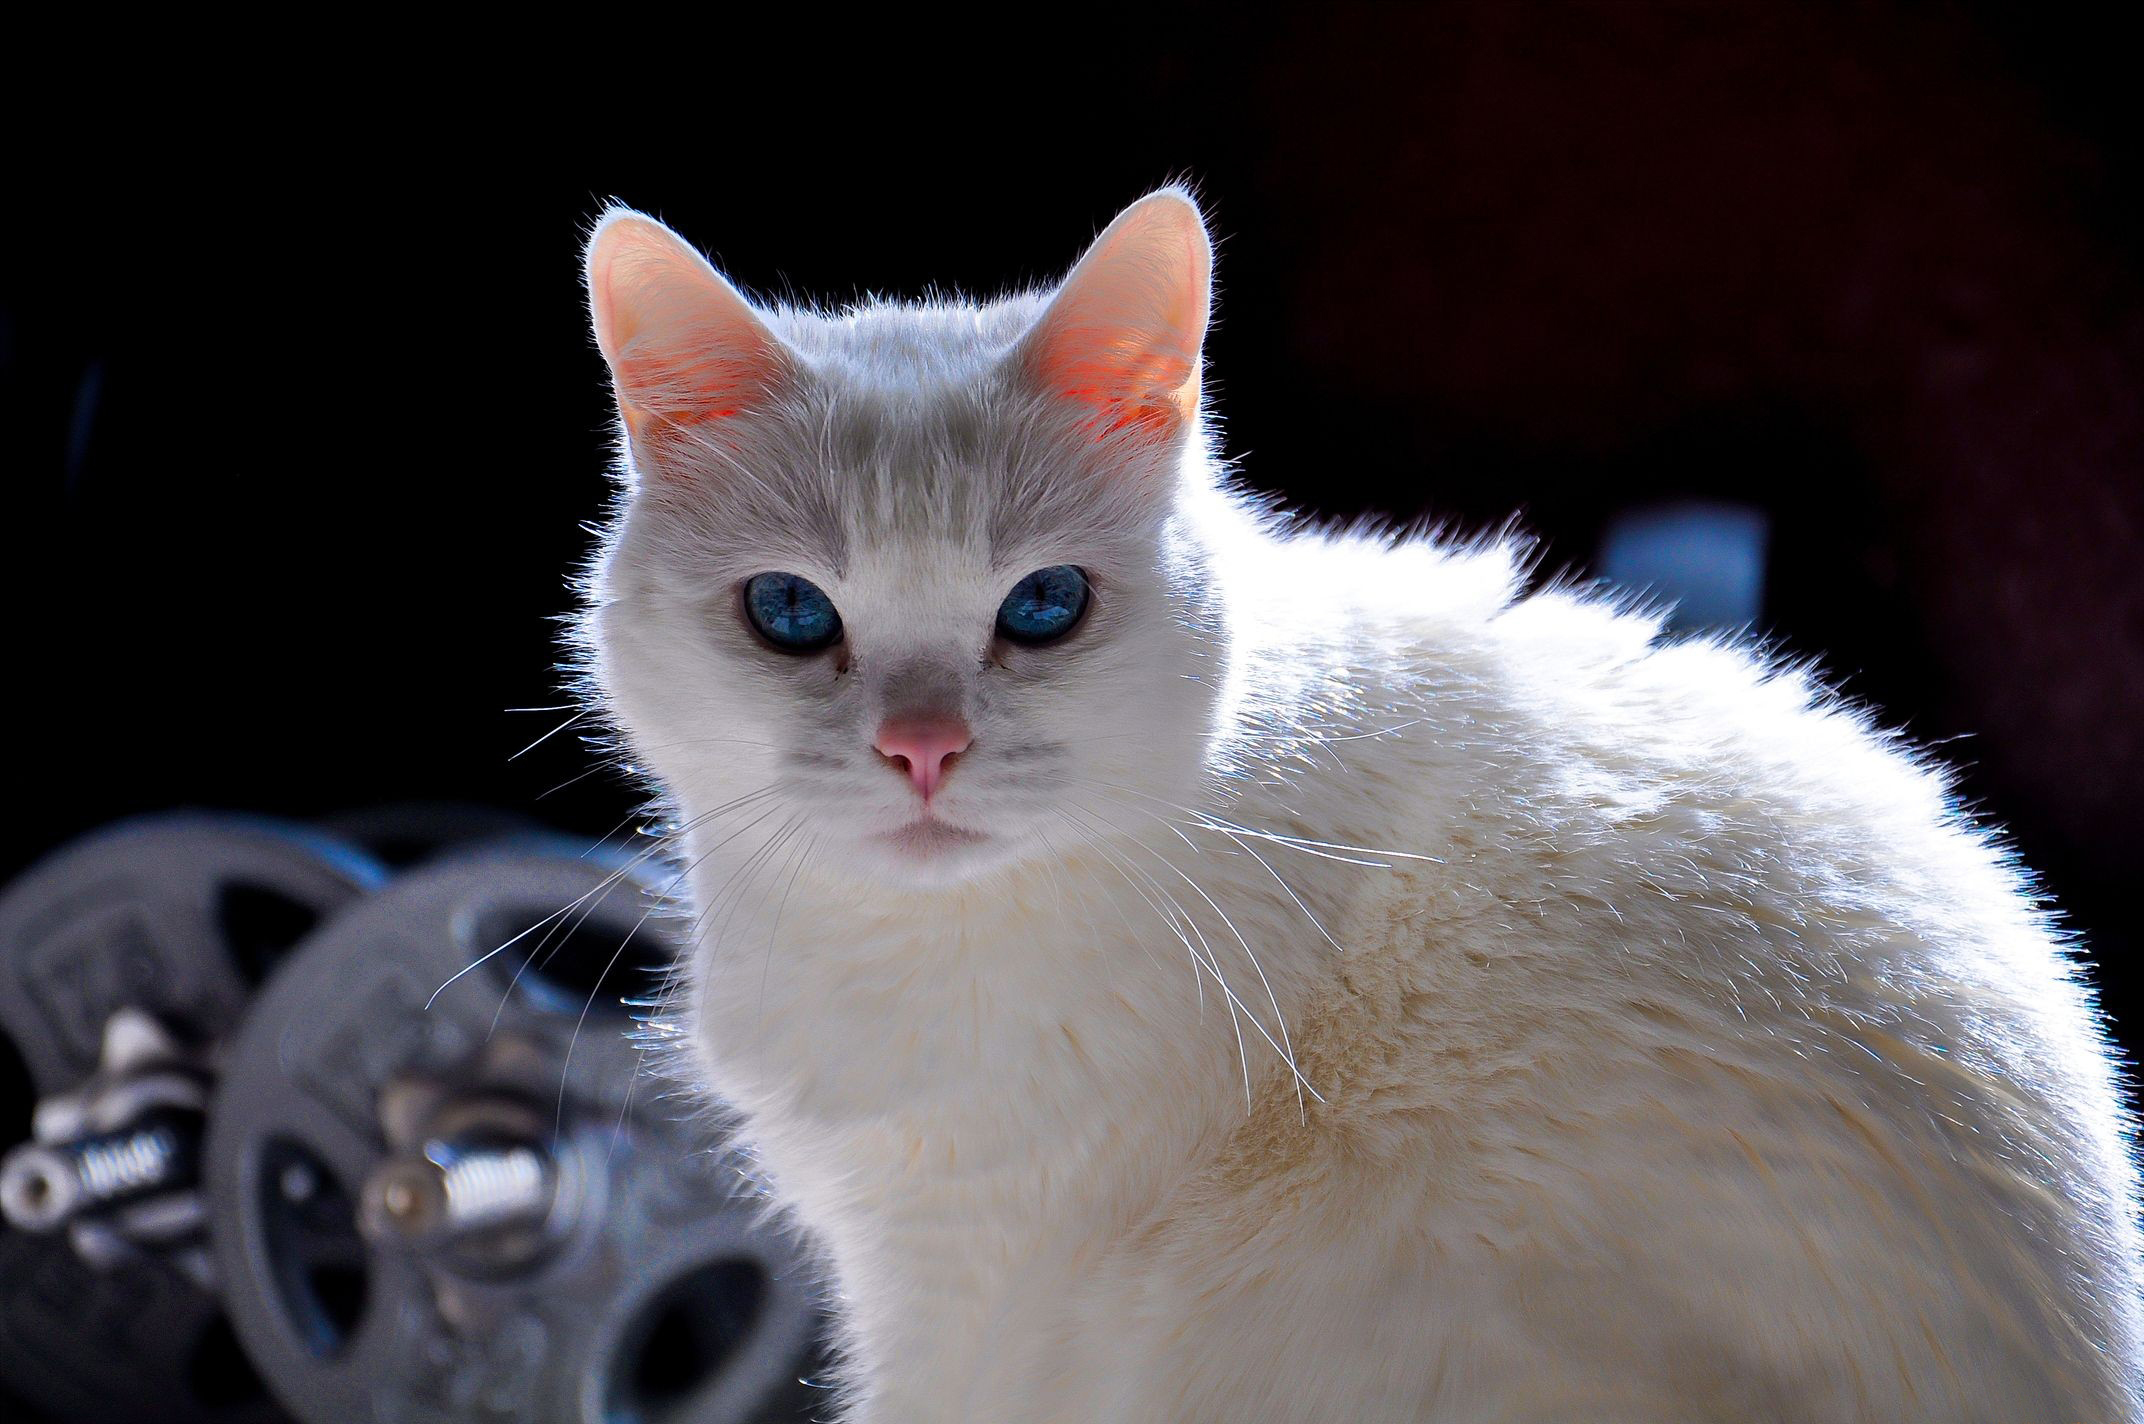 Картинка: Кот, белый, глаза, голубые, взгляд, пушистый, гантели